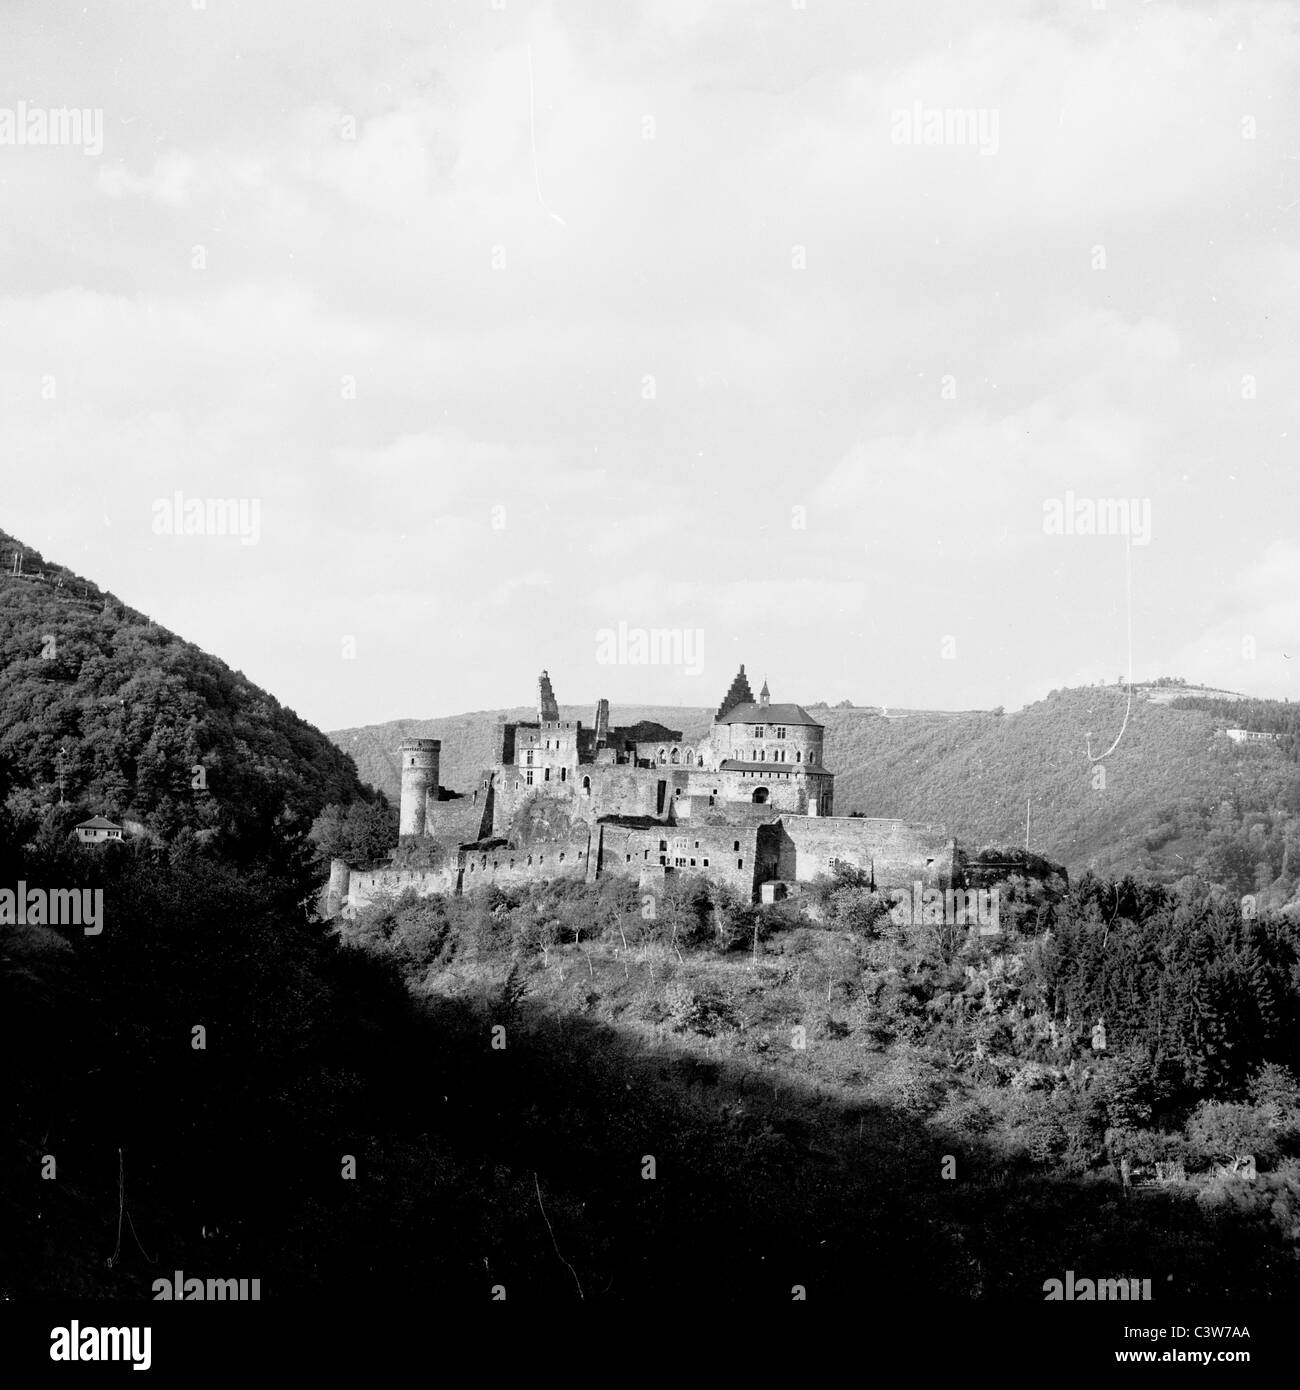 1950s. In questo quadro storico da J Allan contanti possiamo vedere un antico castello arroccato sulla collina nella campagna di Lussemburgo. Foto Stock